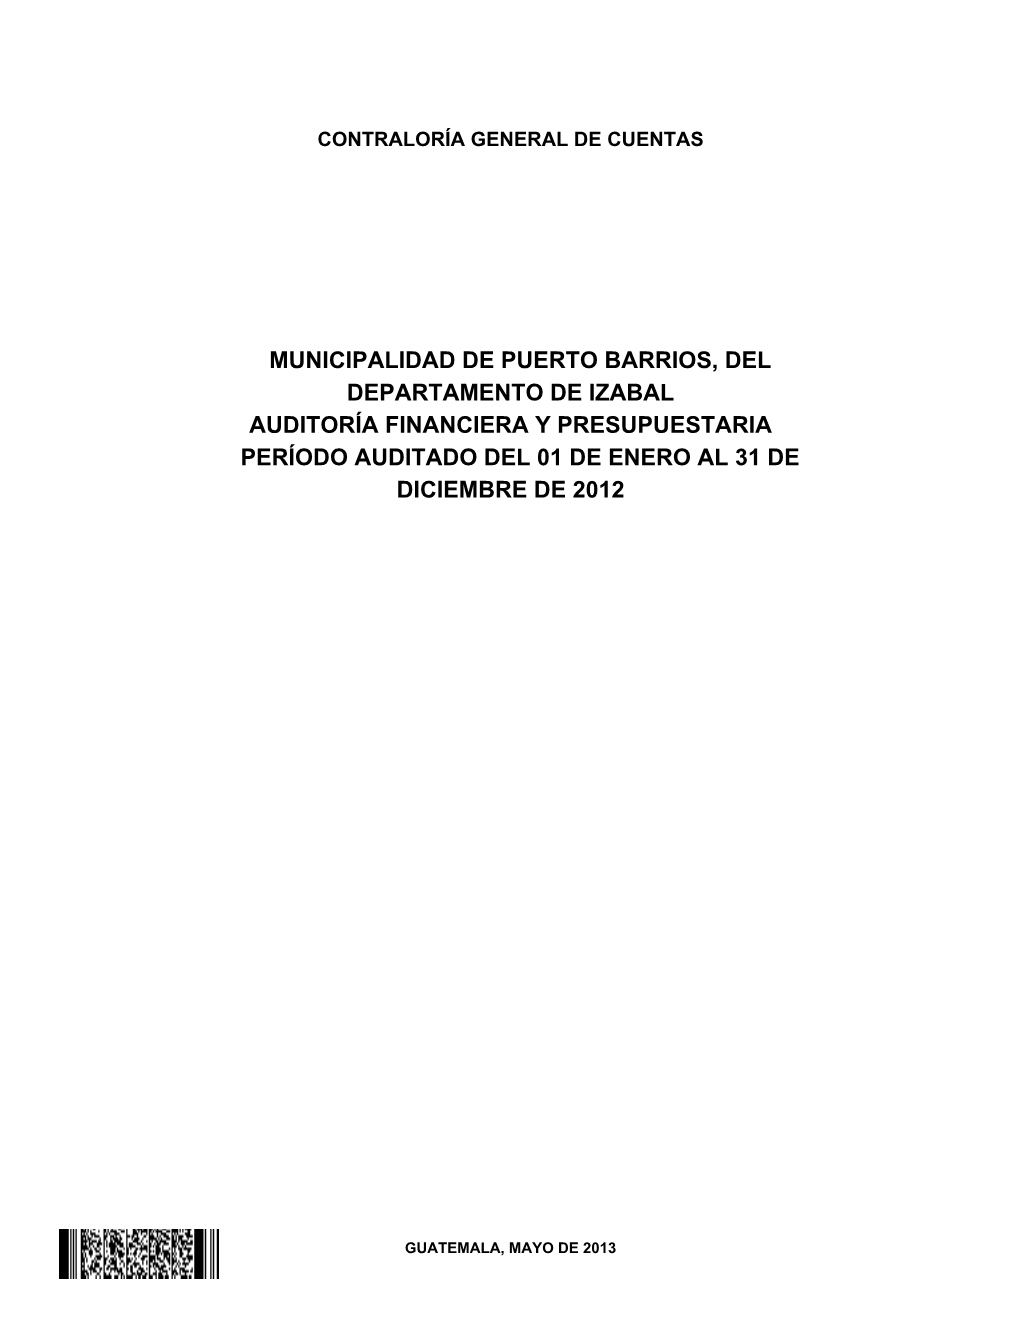 Municipalidad De Puerto Barrios, Del Departamento De Izabal Auditoría Financiera Y Presupuestaria Período Auditado Del 01 De Enero Al 31 De Diciembre De 2012